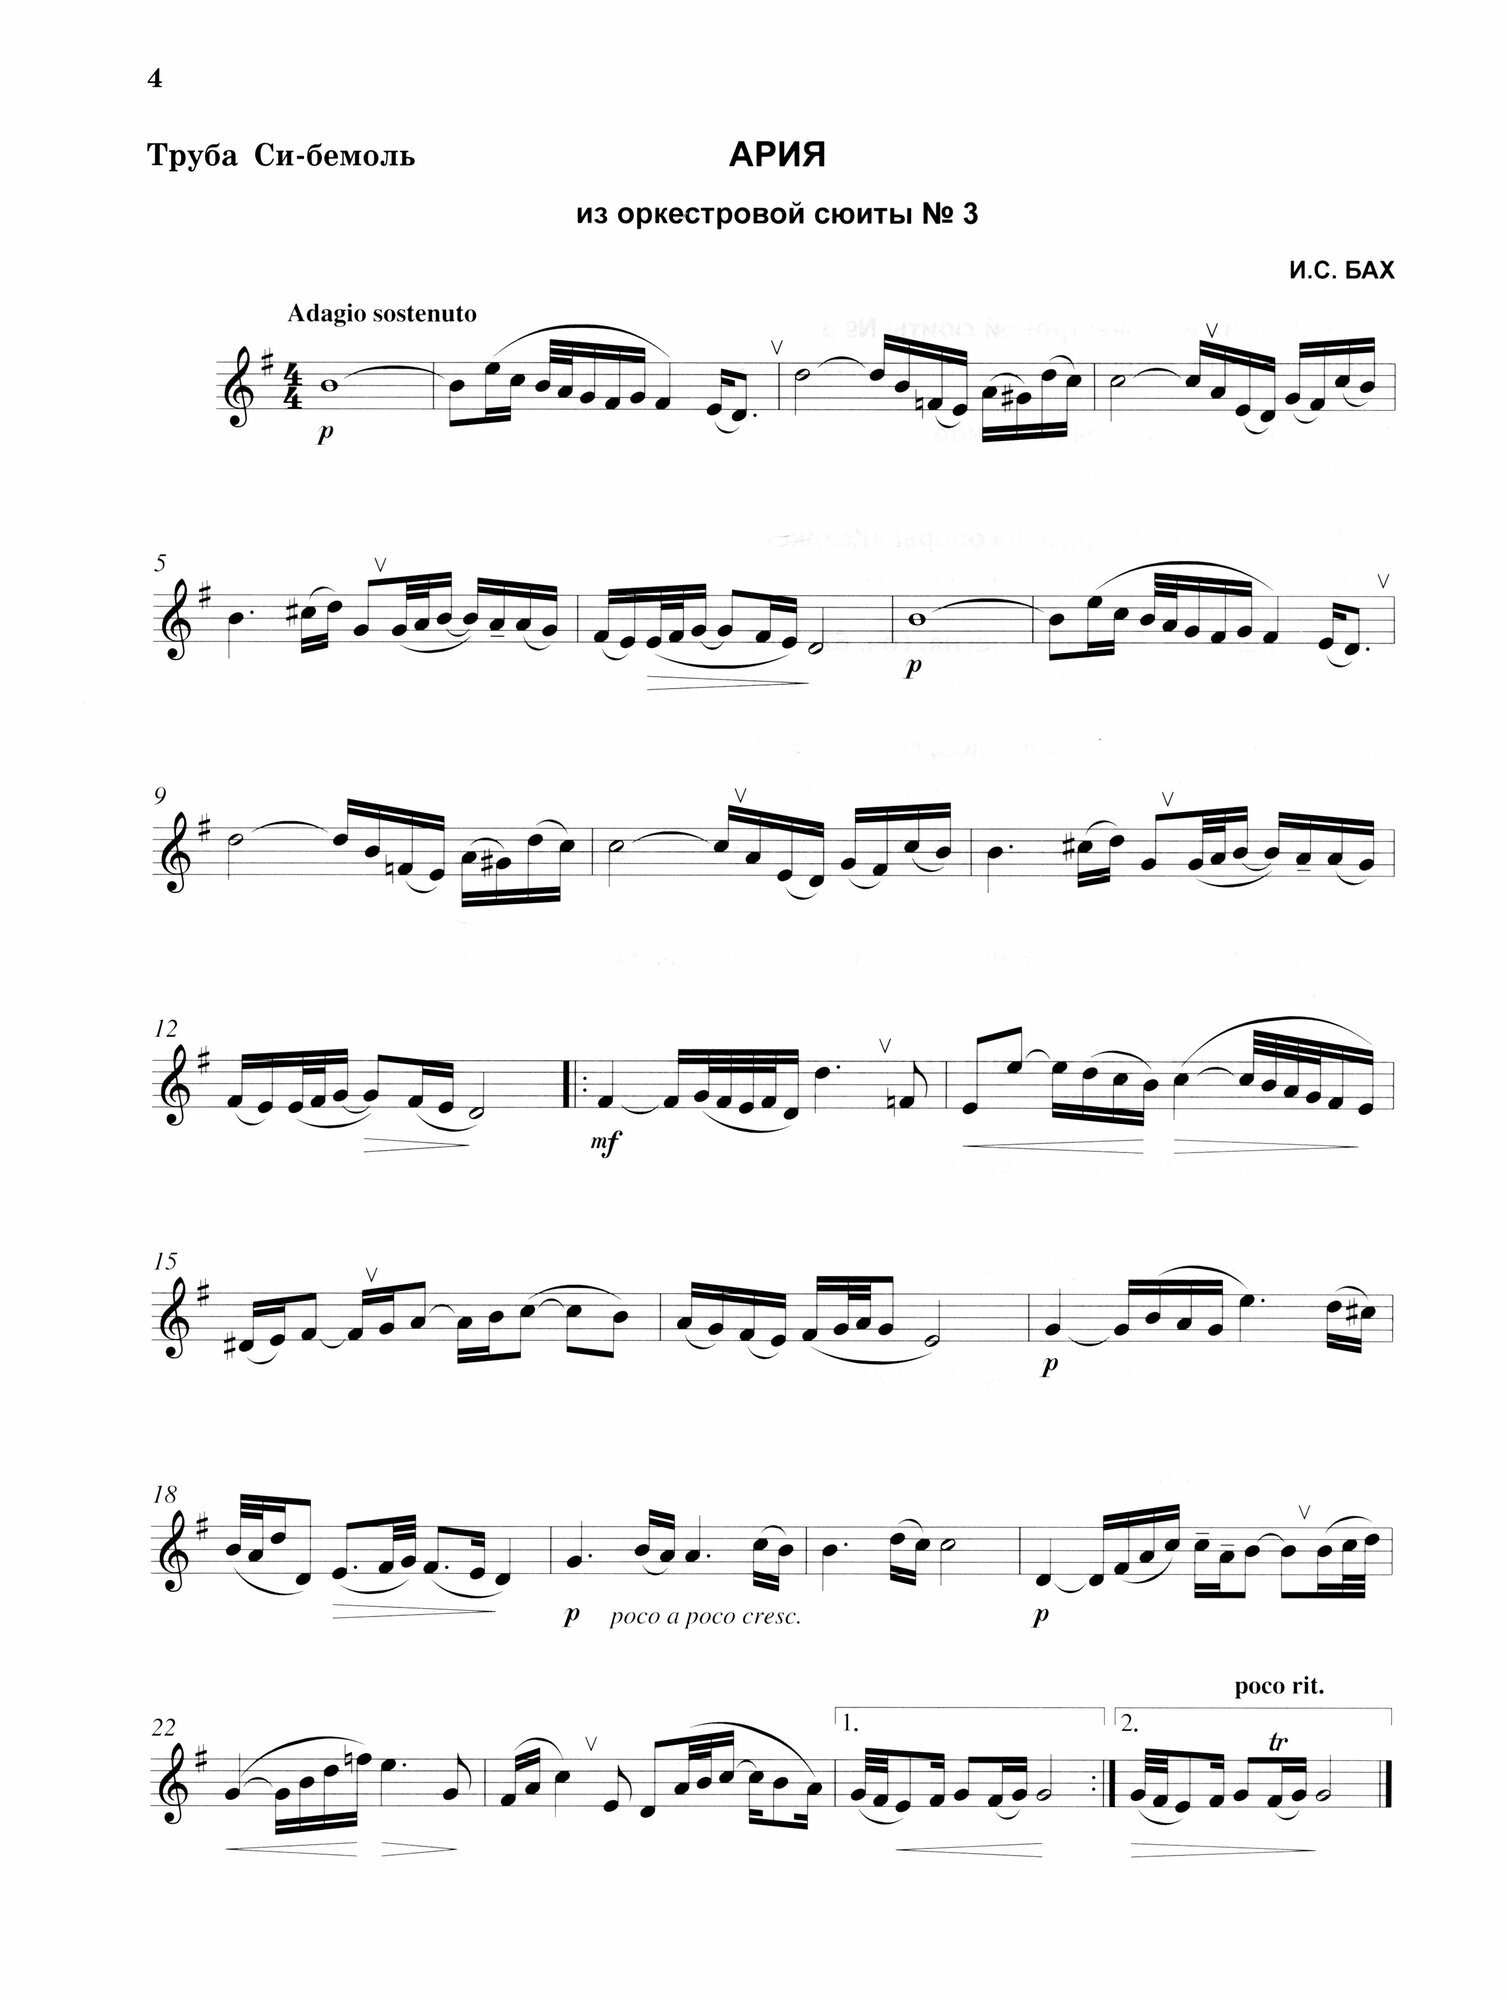 Сборник пьес для трубы с фортепиано. Партия трубы си-бемоль - фото №2